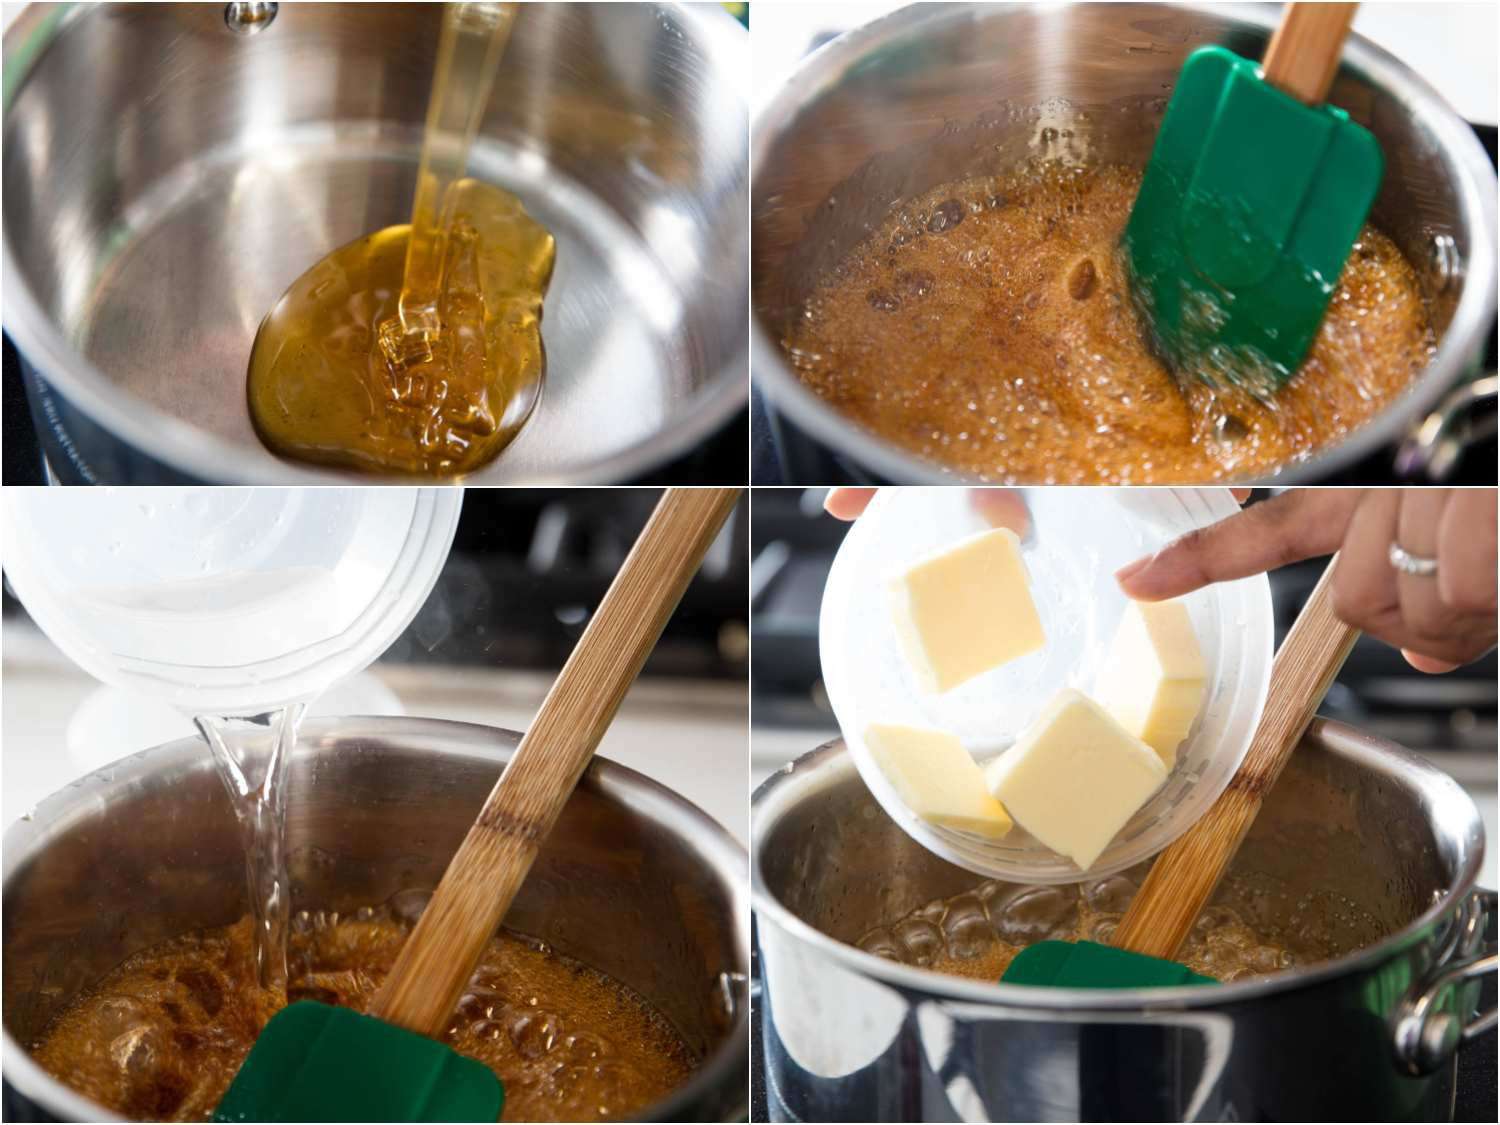 制作焦糖蜂蜜的拼贴画:将蜂蜜倒入炖锅中，在蜂蜜起泡时用灵活的锅铲搅拌，向蜂蜜中加水，加入黄油gydF4y2Ba